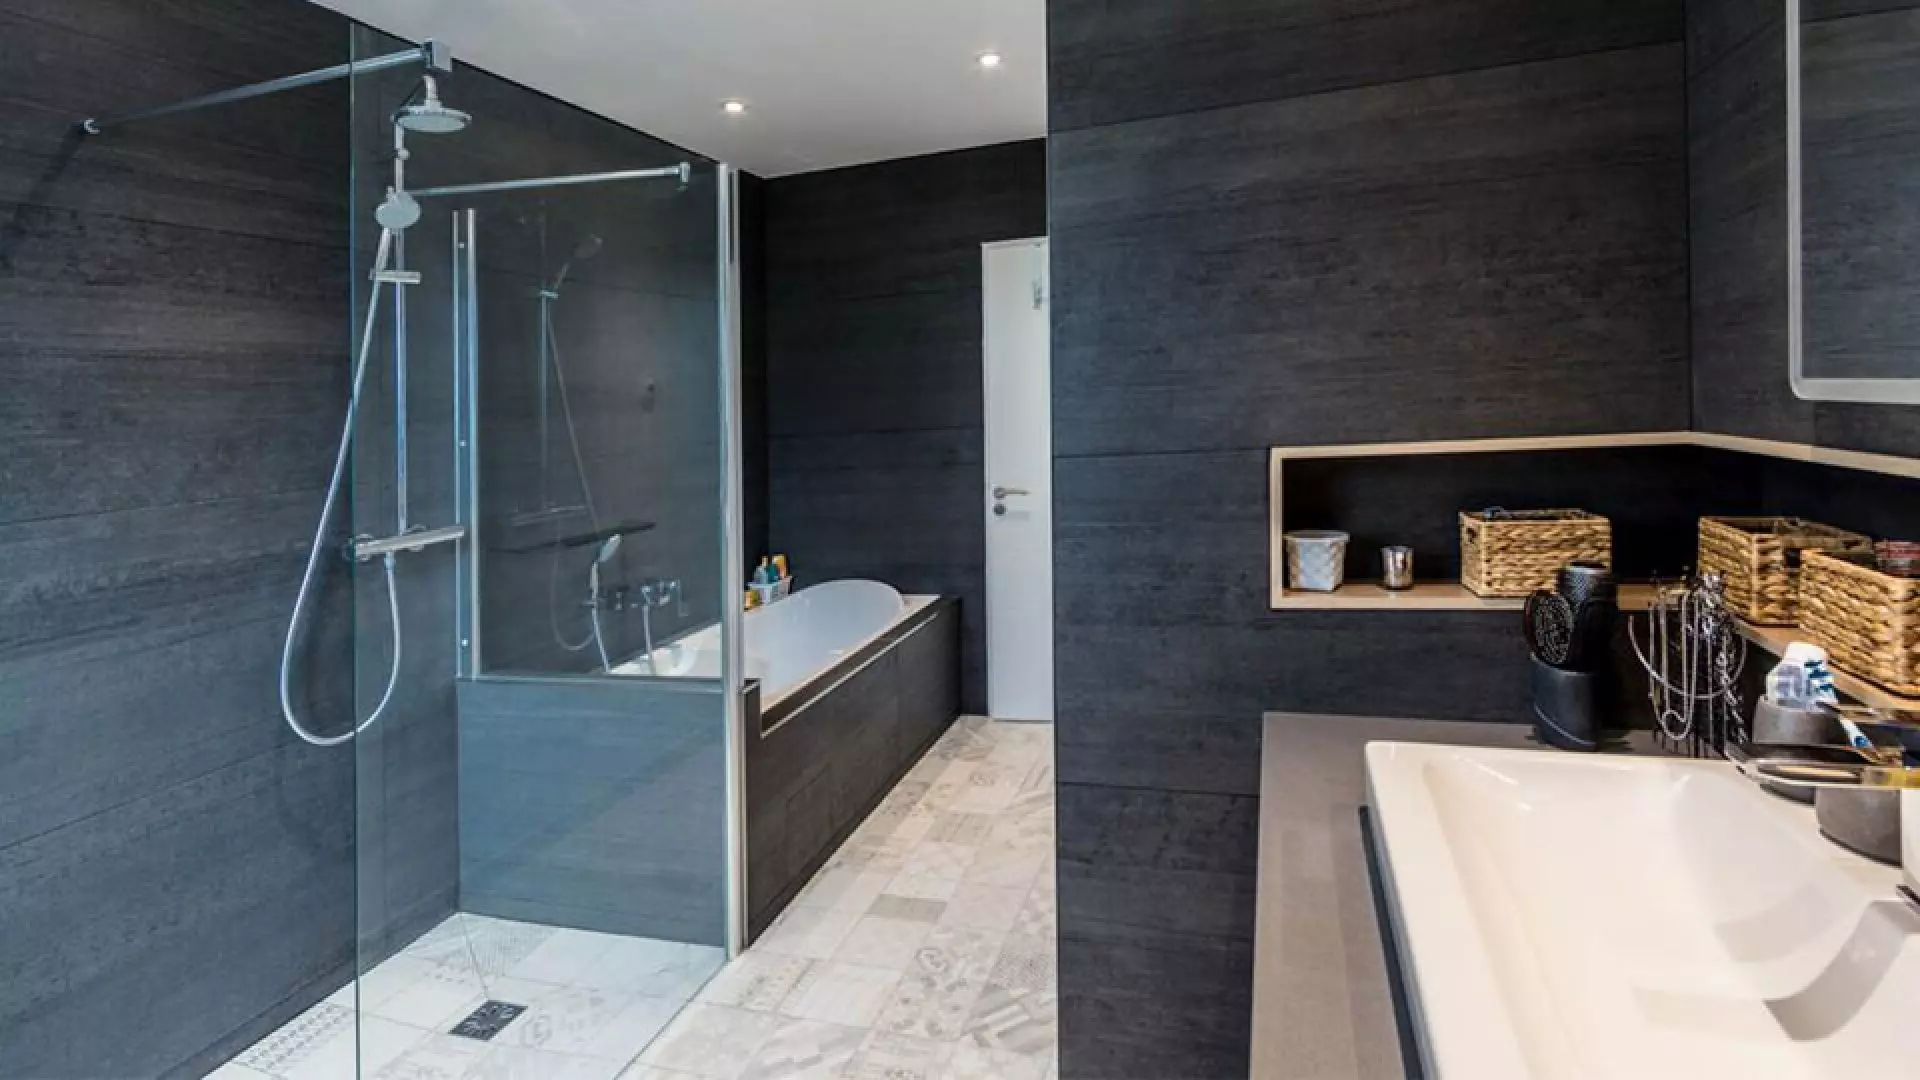 Salle de bain moderne : Utilisation de matériaux haut de gamme